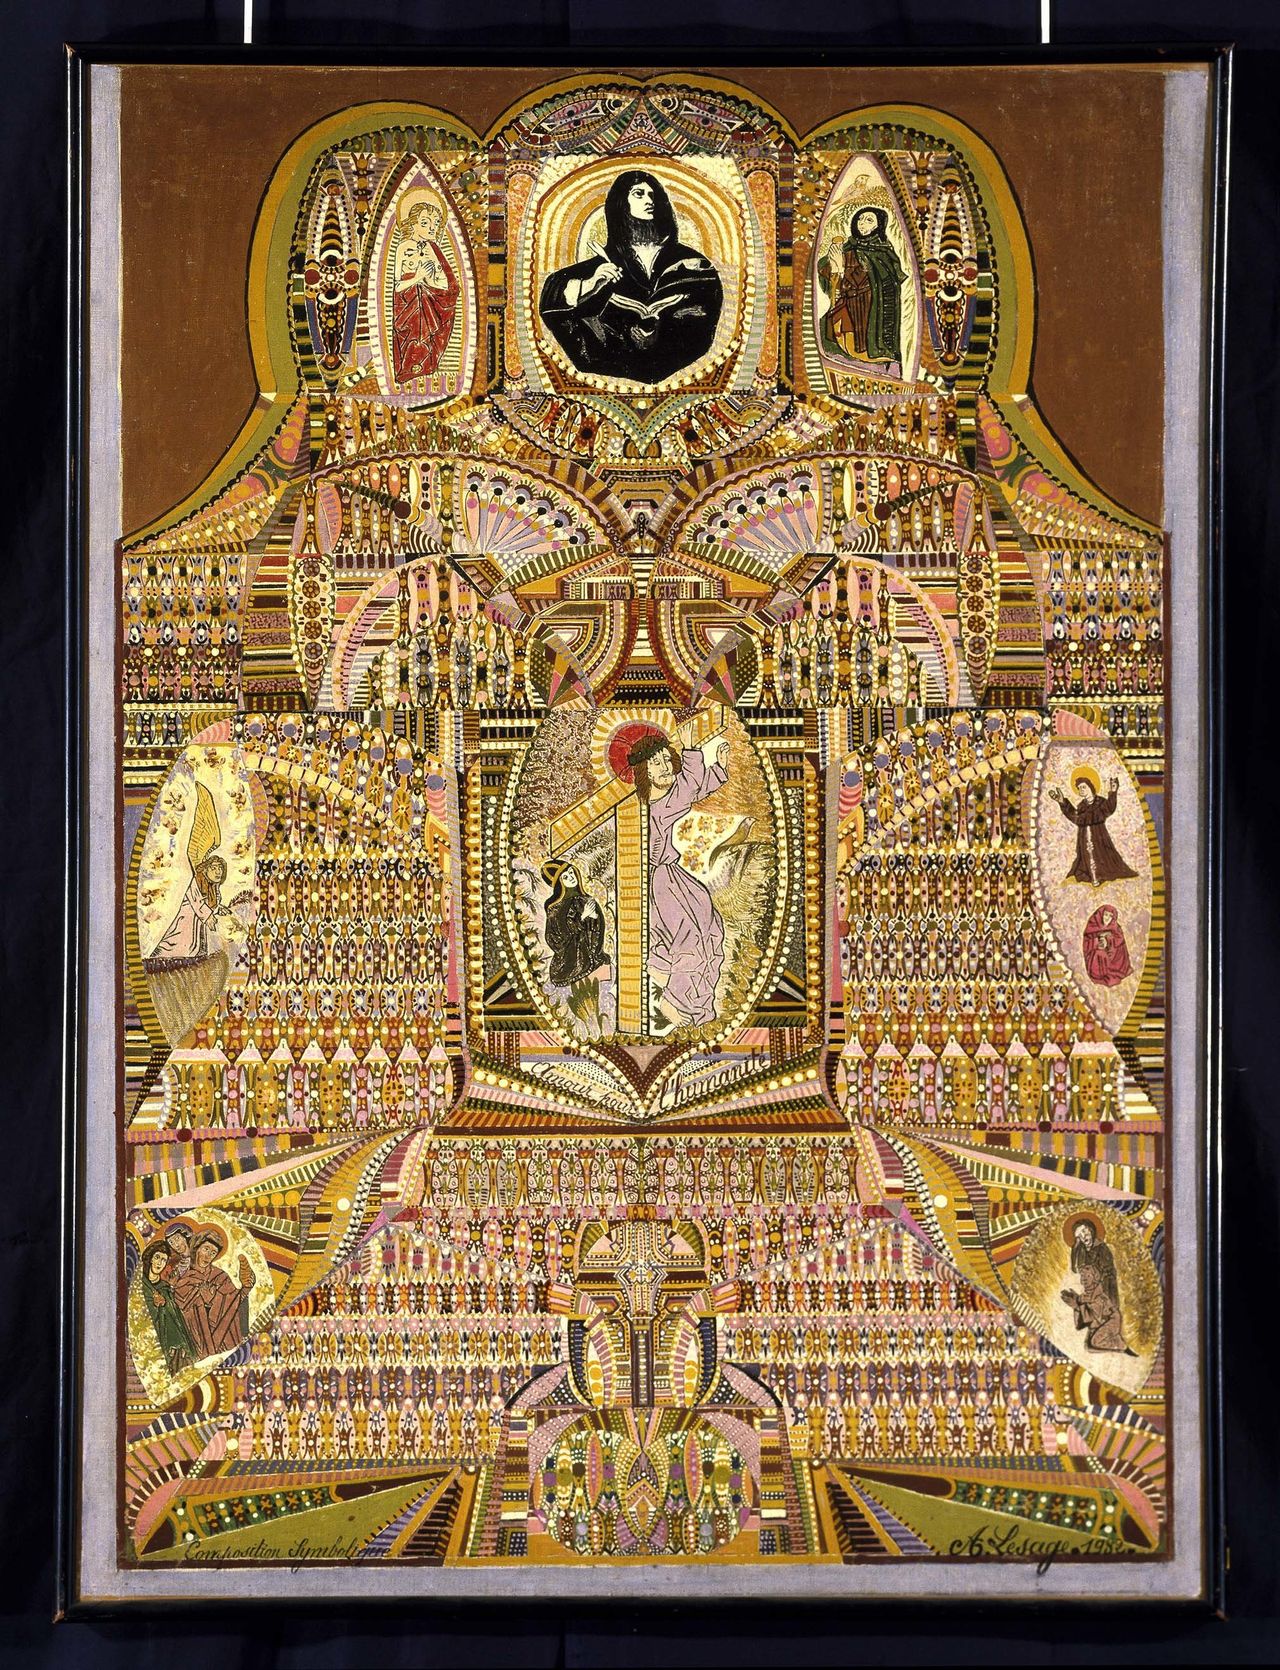 Lesage Augustin, Composition symbolique, amour por l'humanite, 1932, Pas-de-Calais, France, oil on canvas, Collection de l'Art Brut, Lausanne, Switzerland